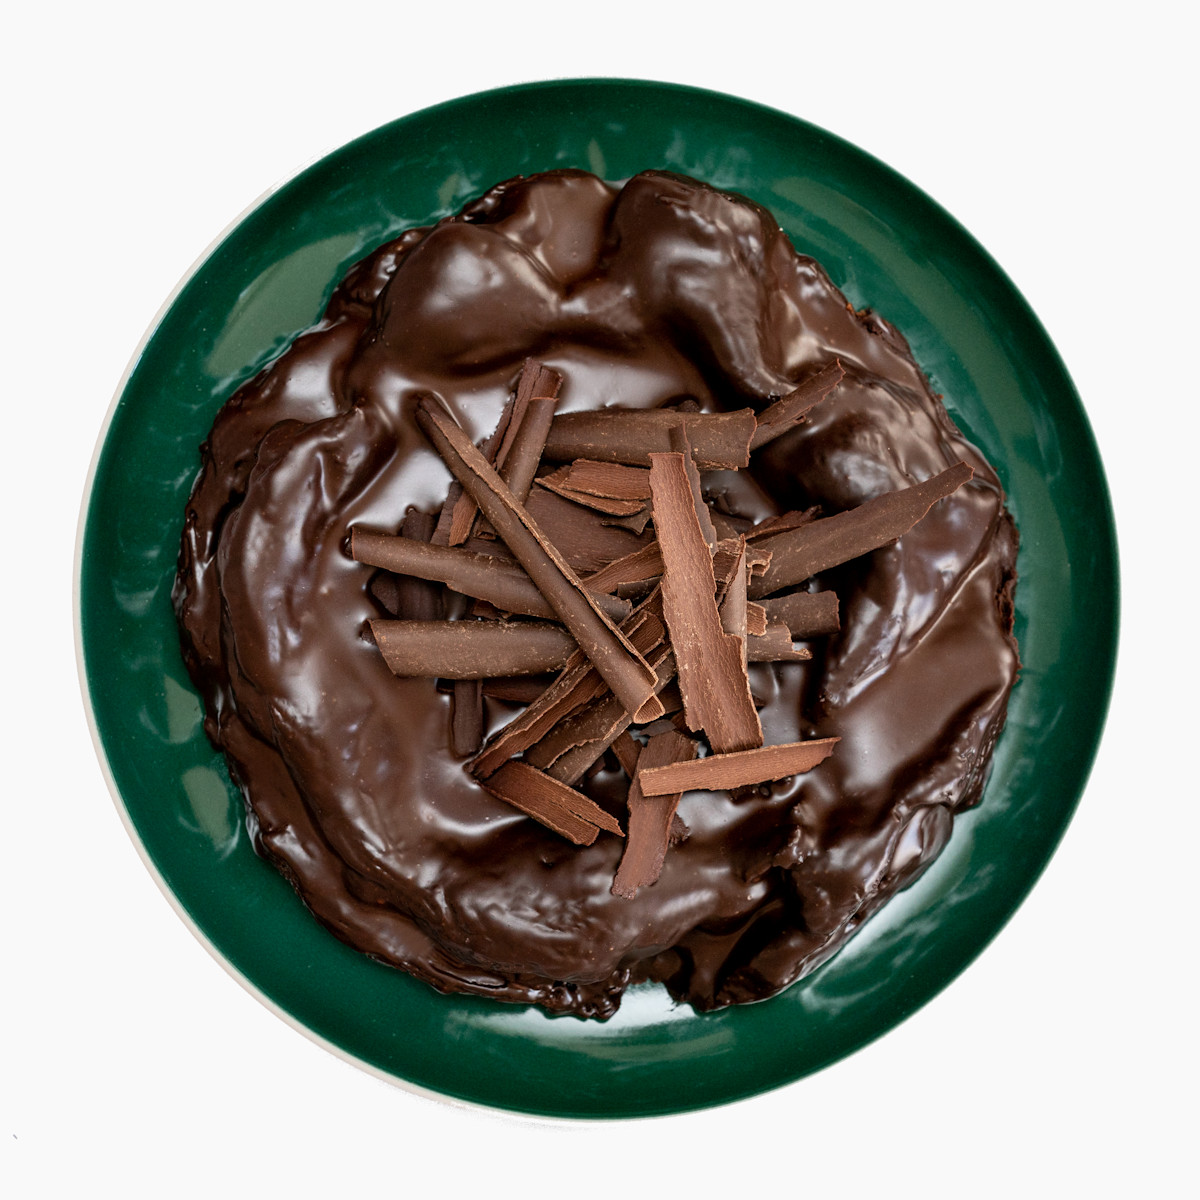 Nádherný Čokodort Originál na zeleném talíři, ozdobený bohatými čokoládovými hoblinami